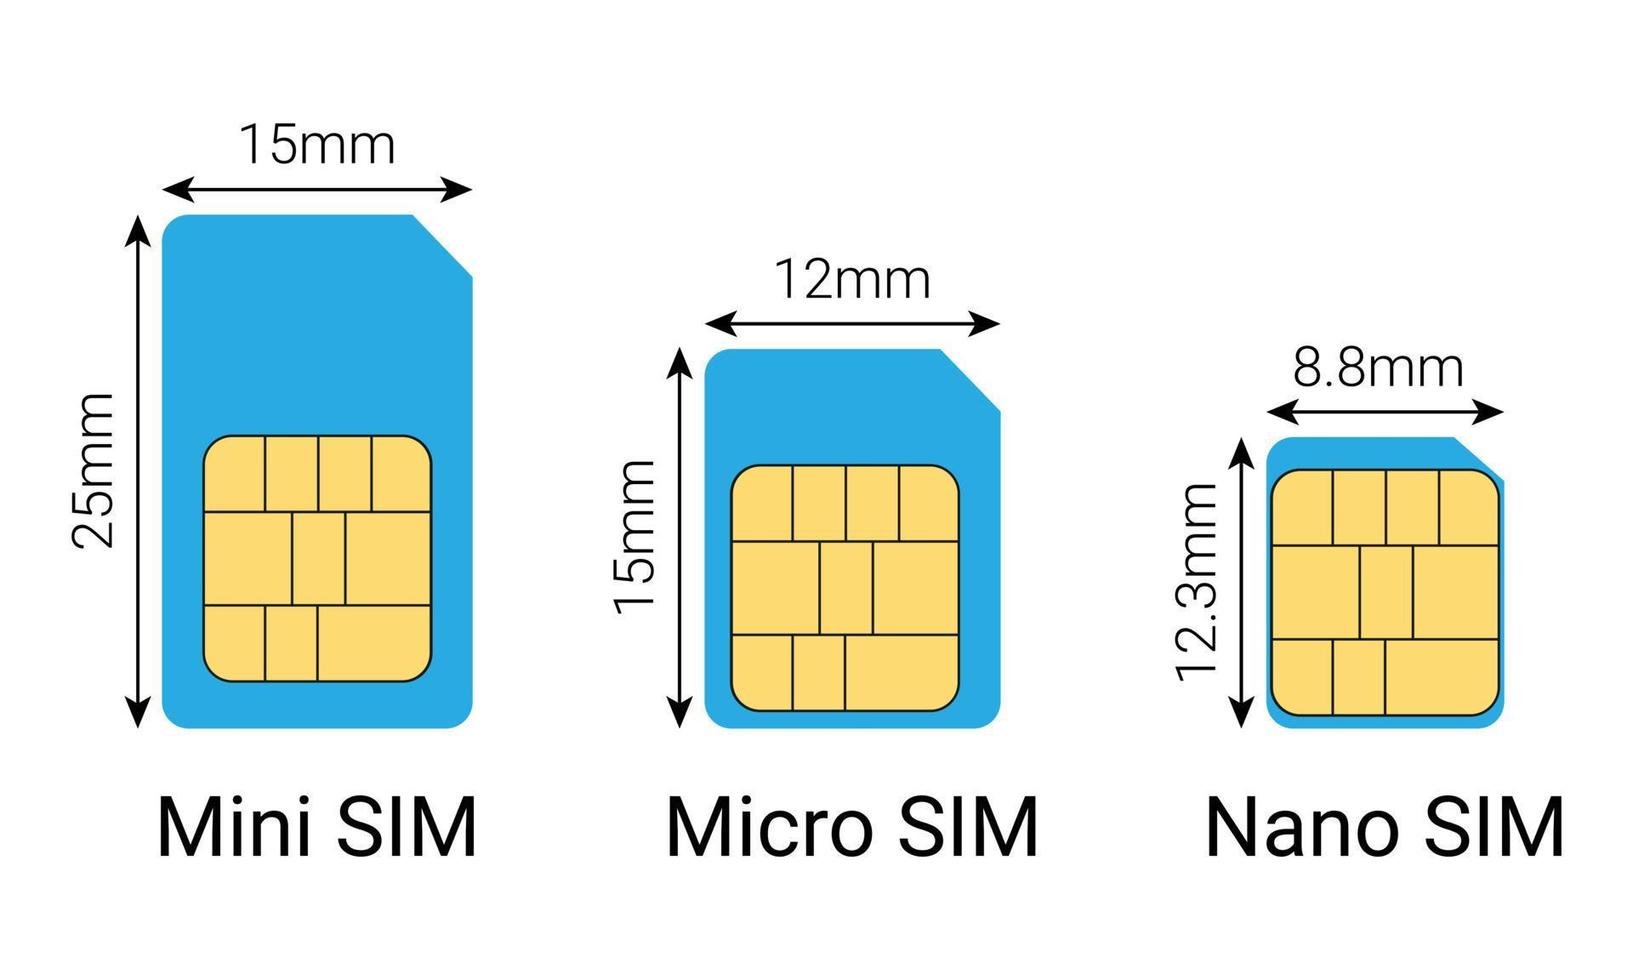 nano simulador, micro simulador, mini sim tarjeta tamaños vector ilustración.